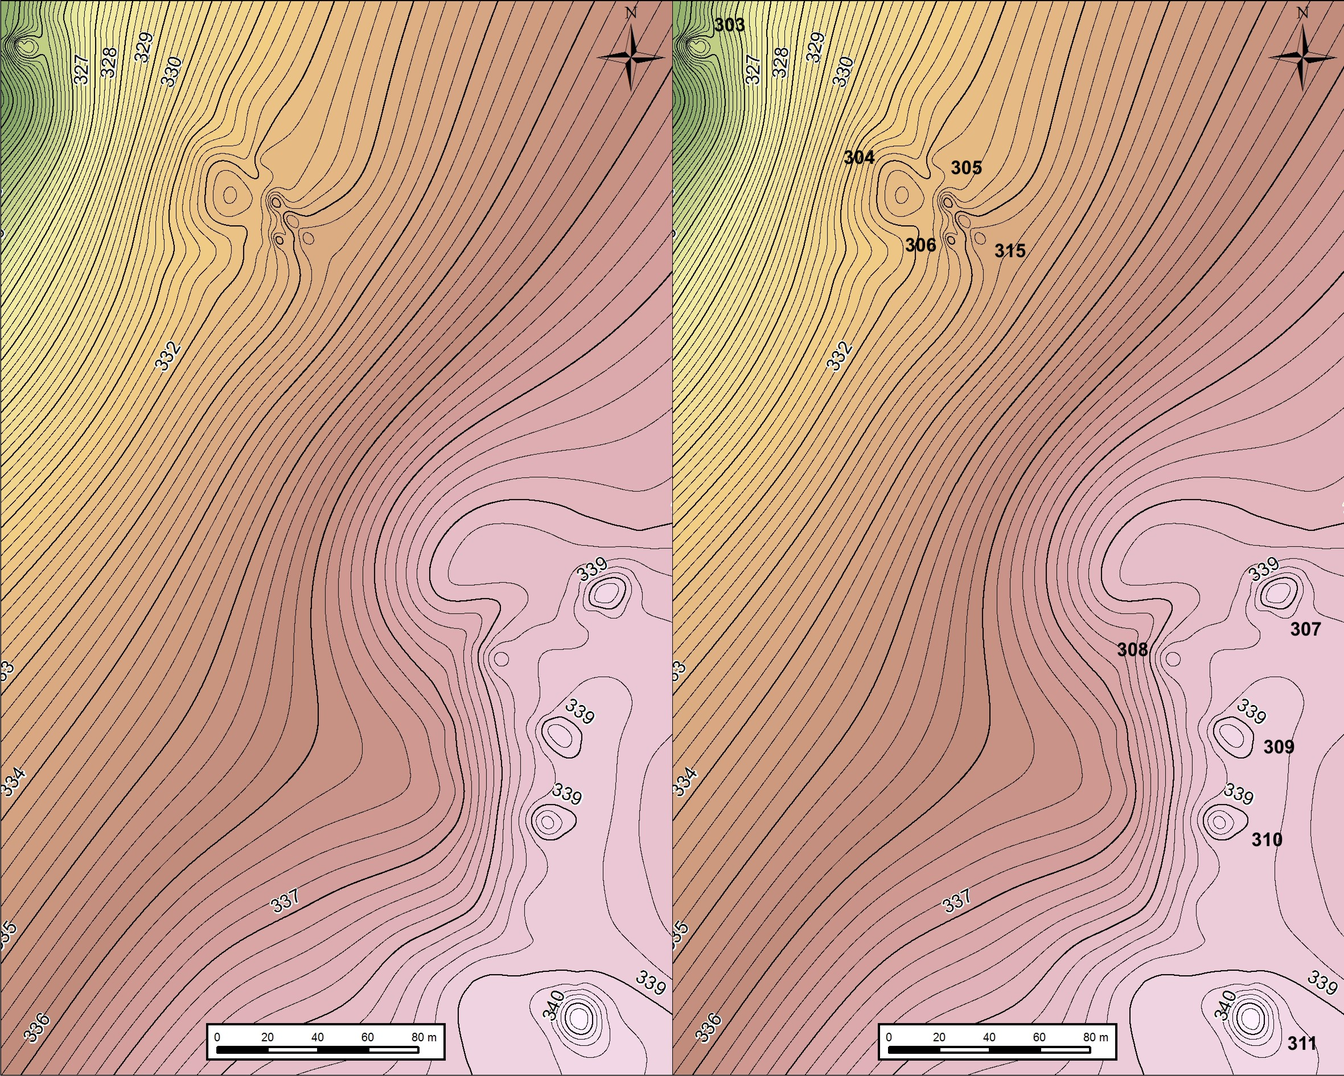 Plan sytuacyjno-wysokościowy centralnej części południowego zgrupowania kurhanów w Miłowaniu (po lewej). Plan sytuacyjno-wysokościowy centralnej części południowego zgrupowania kurhanów w Miłowaniu wraz z numeracją kopców (po prawej)